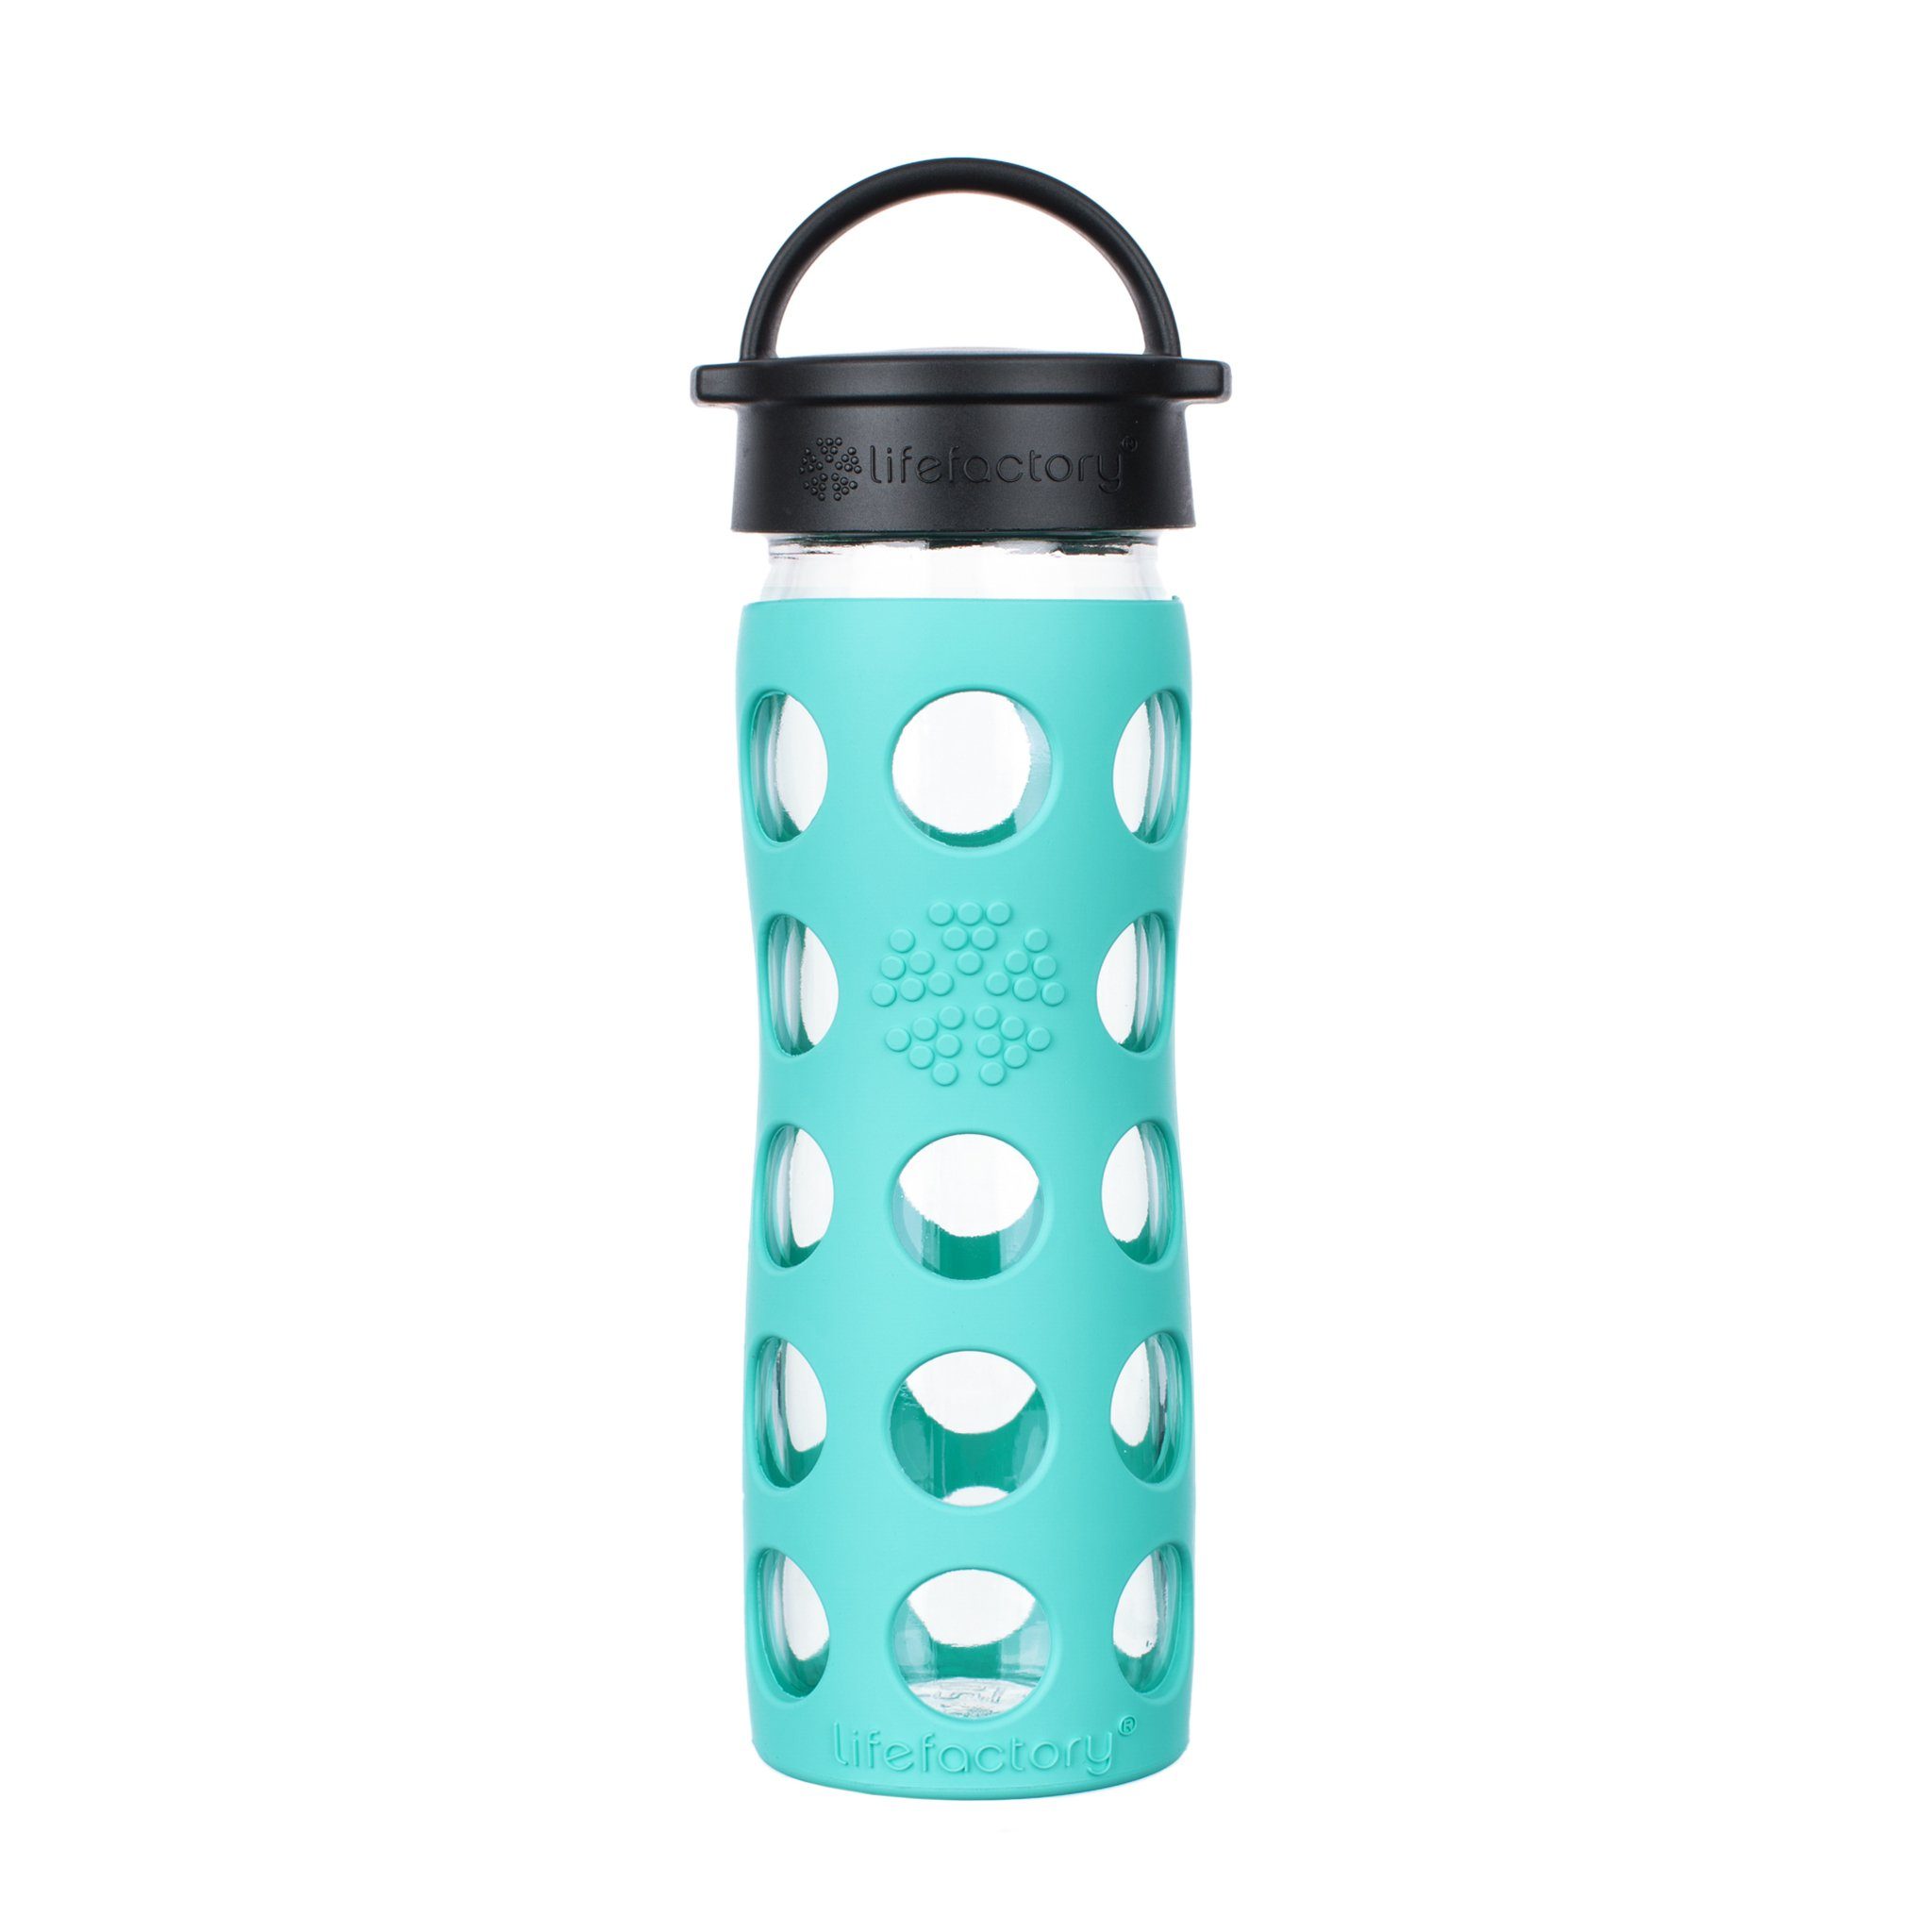 Lifefactory Babyflasche, Lifefactory Glas Flasche mit Silikonhülle und Schraubverschluss, 475ml Sea Green